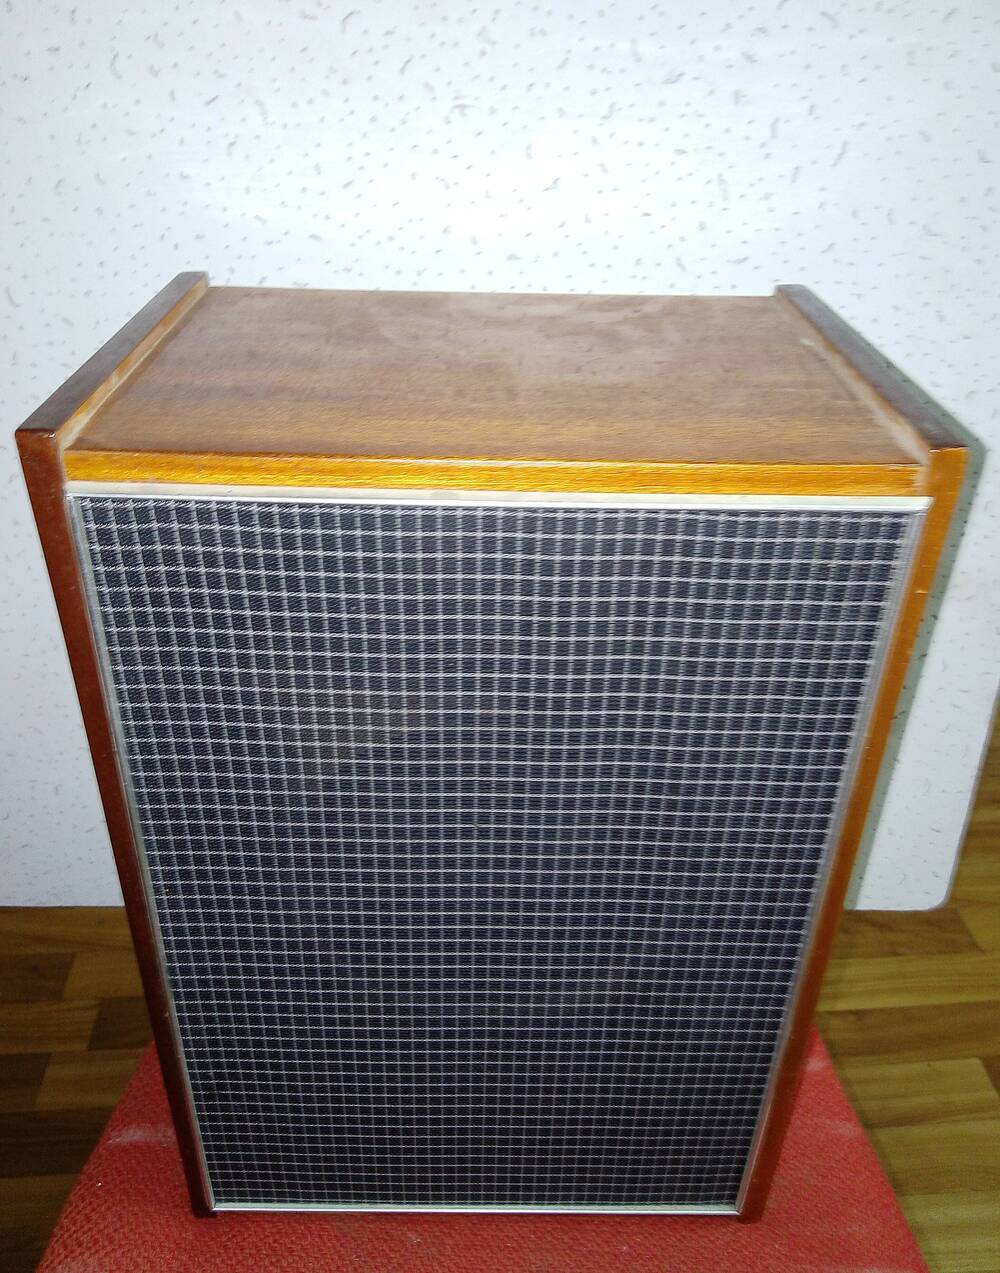 Акустическая система (звуковая колонка) ЗАС-2 к радиоле «Вега -312». СССР  г.Бердск, 1974 г.